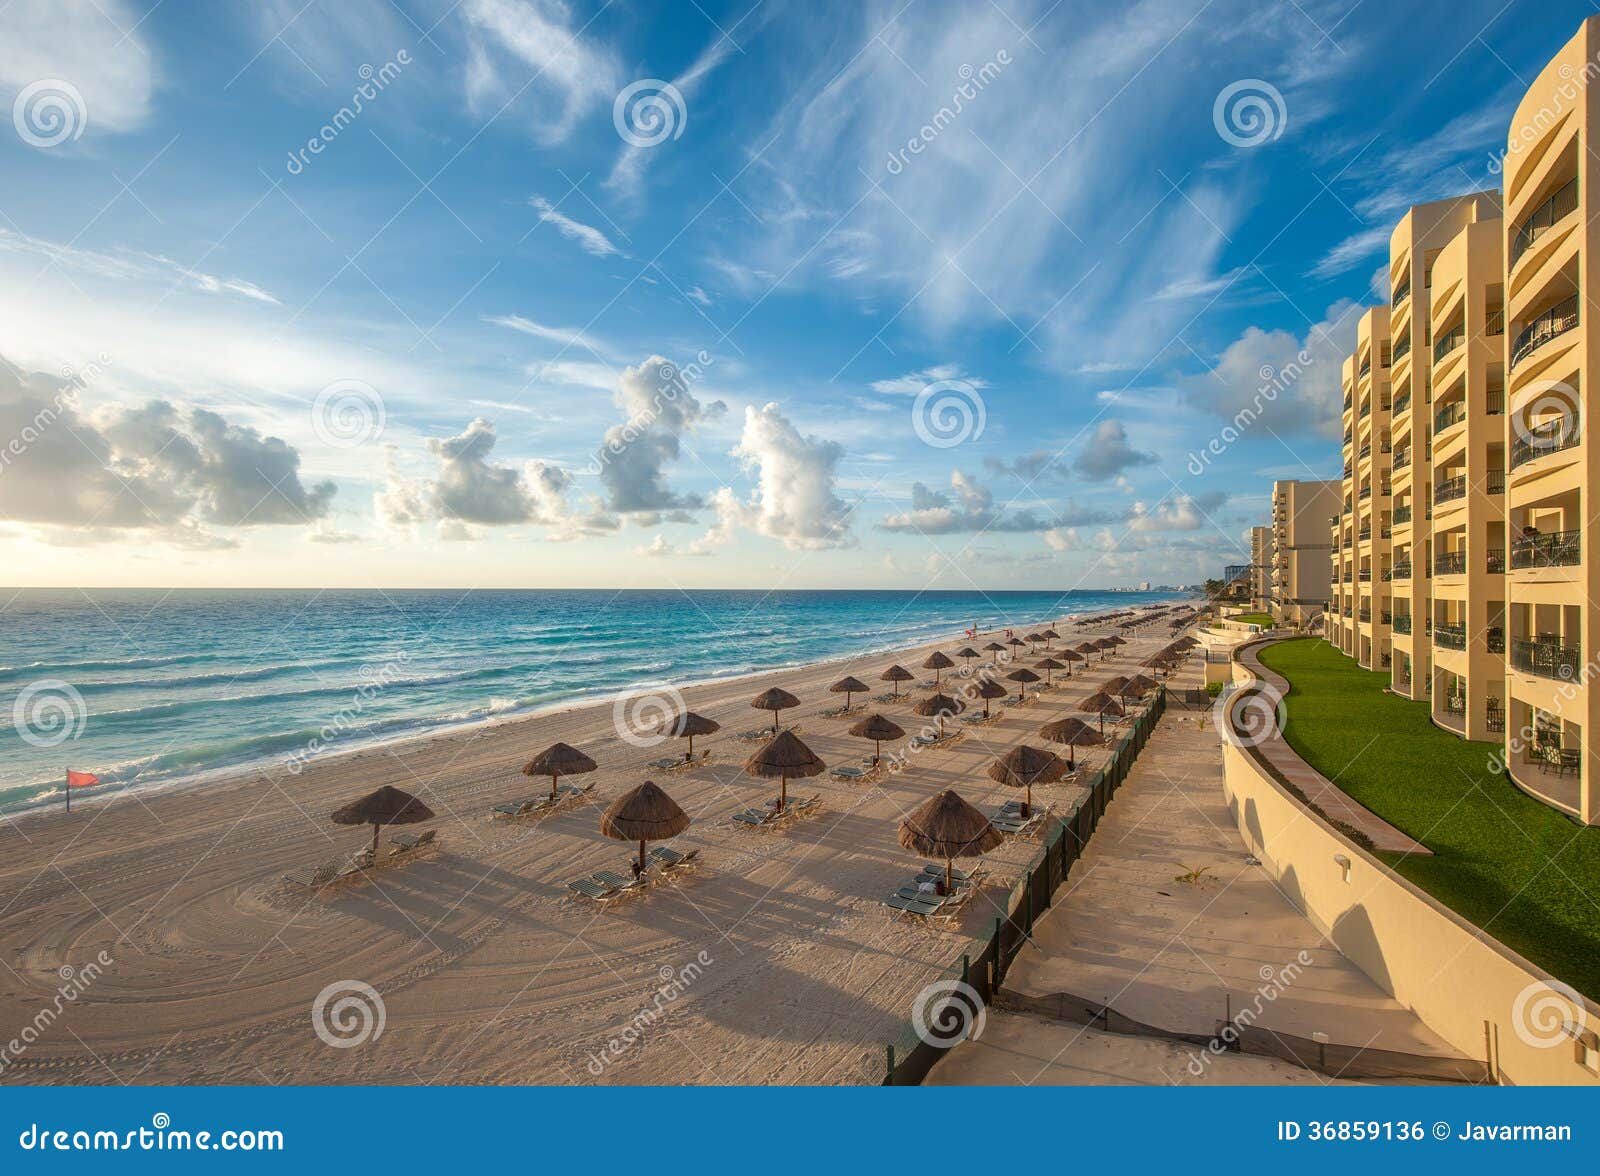 cancun beach panorama, mexico